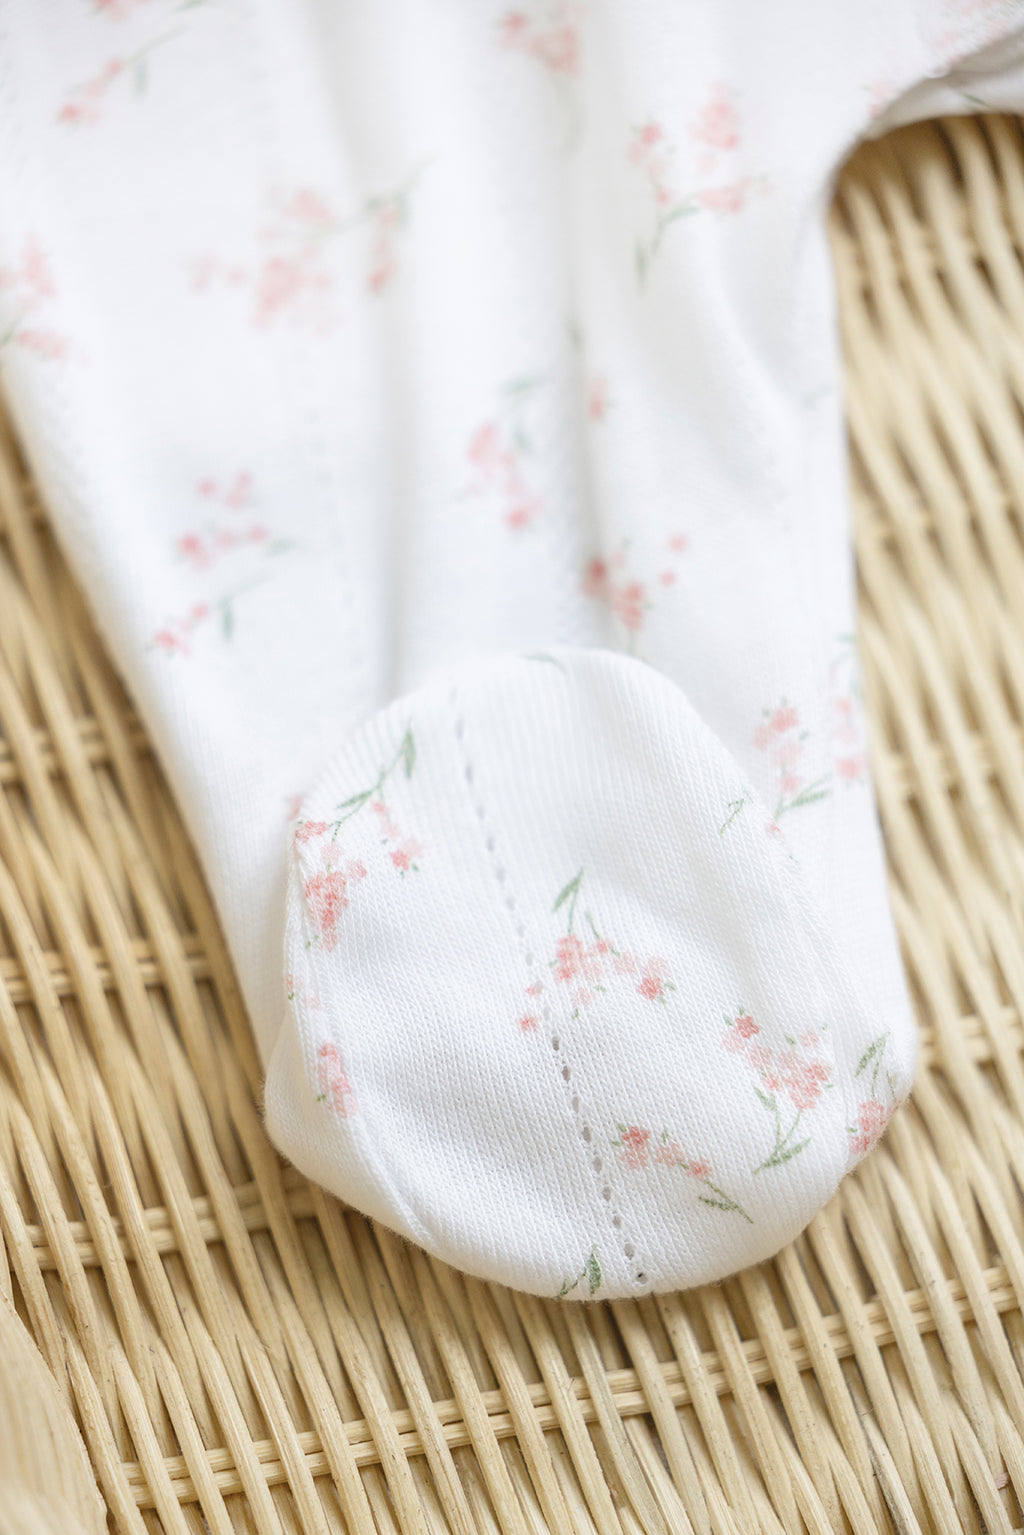 Pajamas - White Print flowery